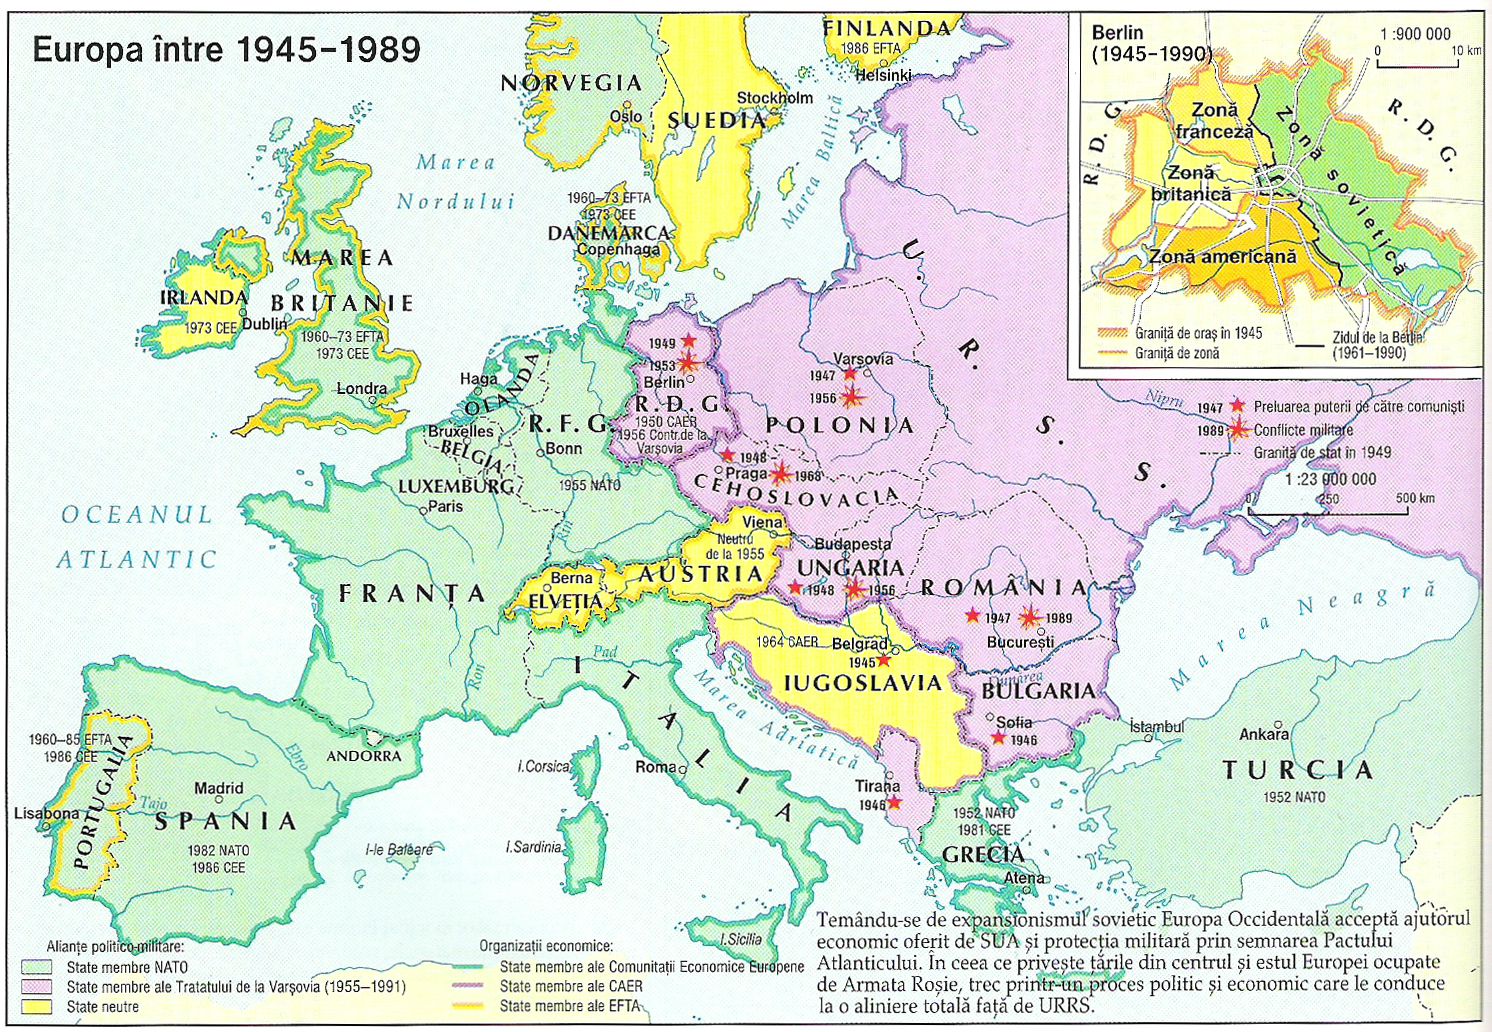   Ţările europene, configuraţia fizică din timpul Războiului Rece. Credit: https://sites.google.com/site/hartideistorie/-razboiul-rece